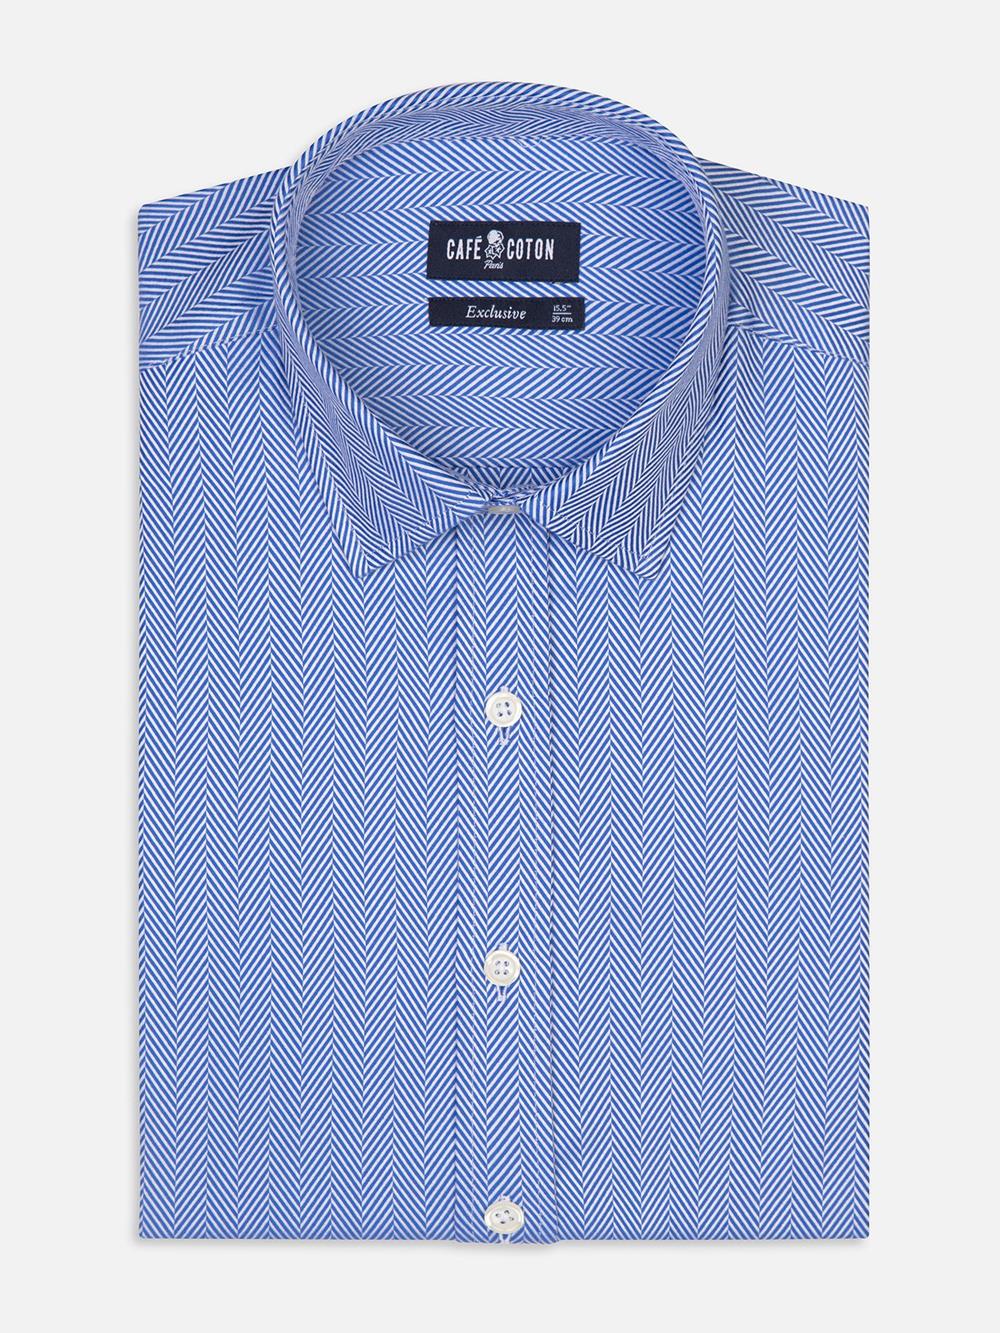 Come tailliertes Hemd mit blauem Fischgrätenmuster - Kurzem Kragen